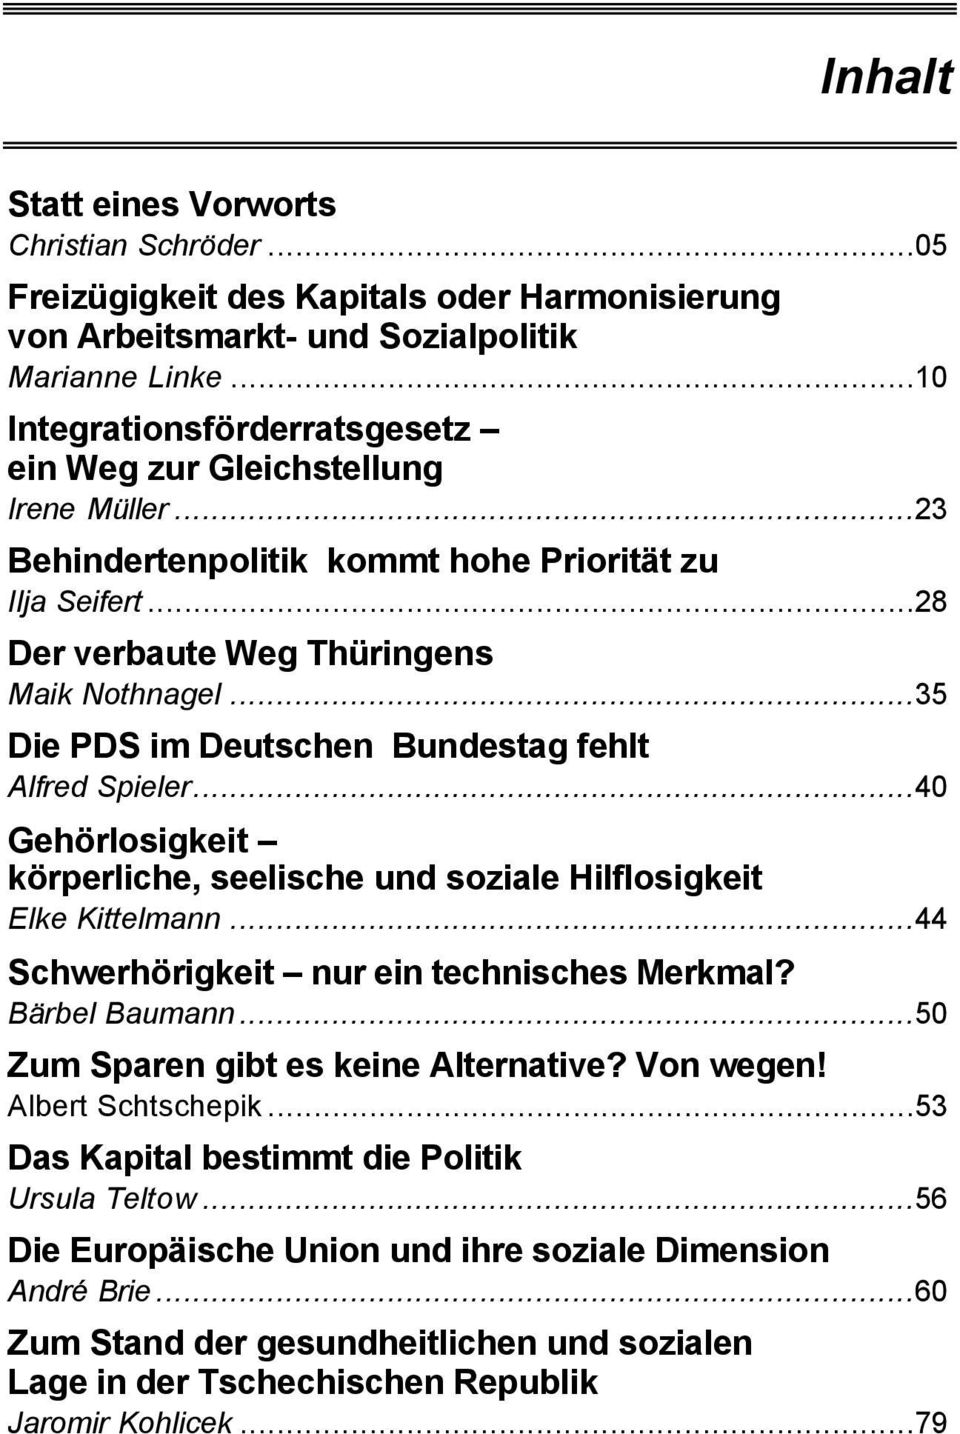 ..35 Die PDS im Deutschen Bundestag fehlt Alfred Spieler...40 Gehörlosigkeit körperliche, seelische und soziale Hilflosigkeit Elke Kittelmann...44 Schwerhörigkeit nur ein technisches Merkmal?